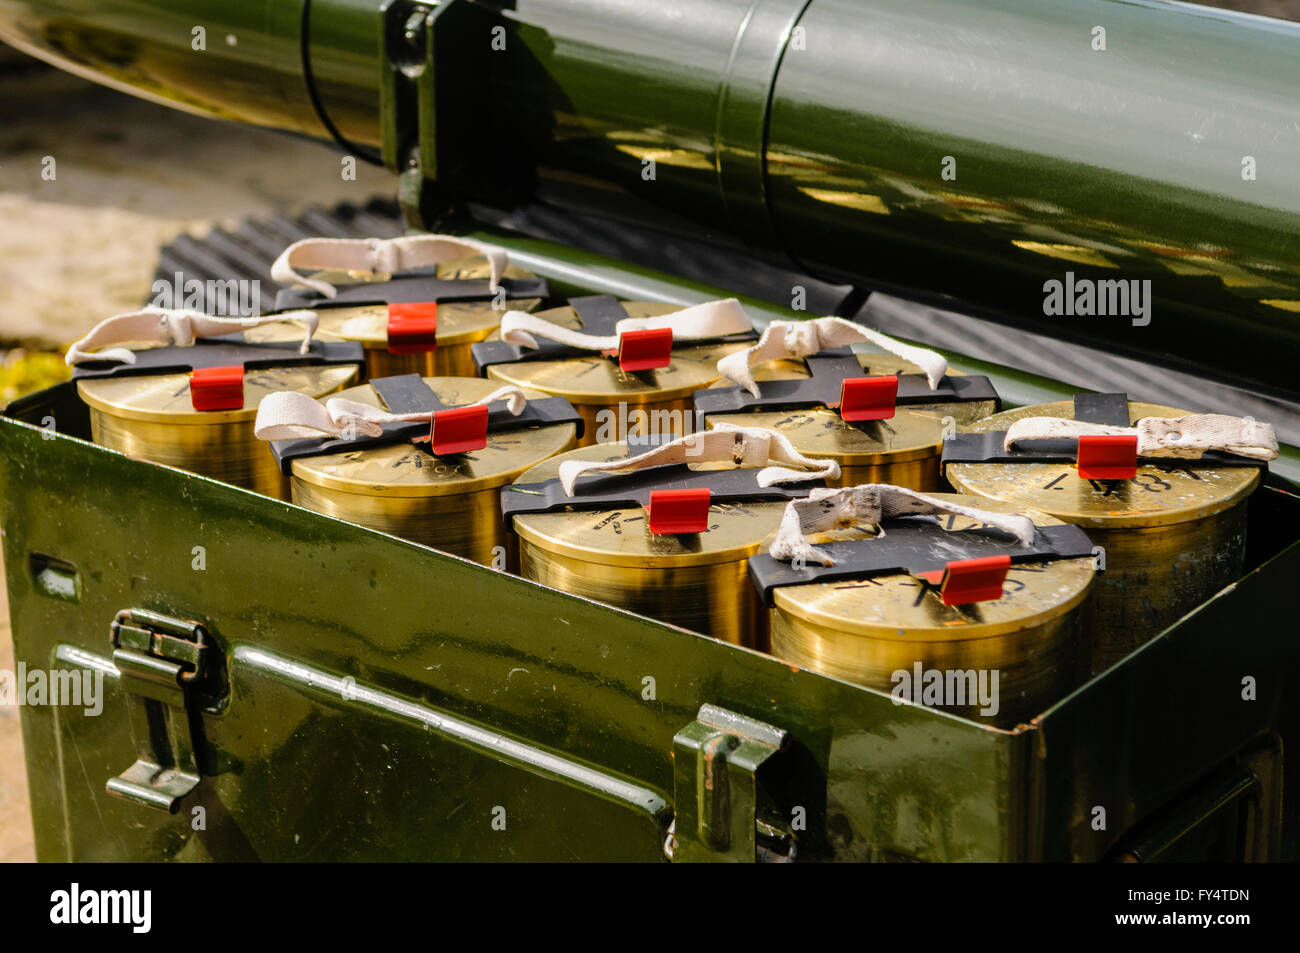 Scatola di munizioni di cartucce di esplosivo per un L118 cannone leggero obice dal Royal Artillery, esercito britannico, pronto per essere sparato. Foto Stock